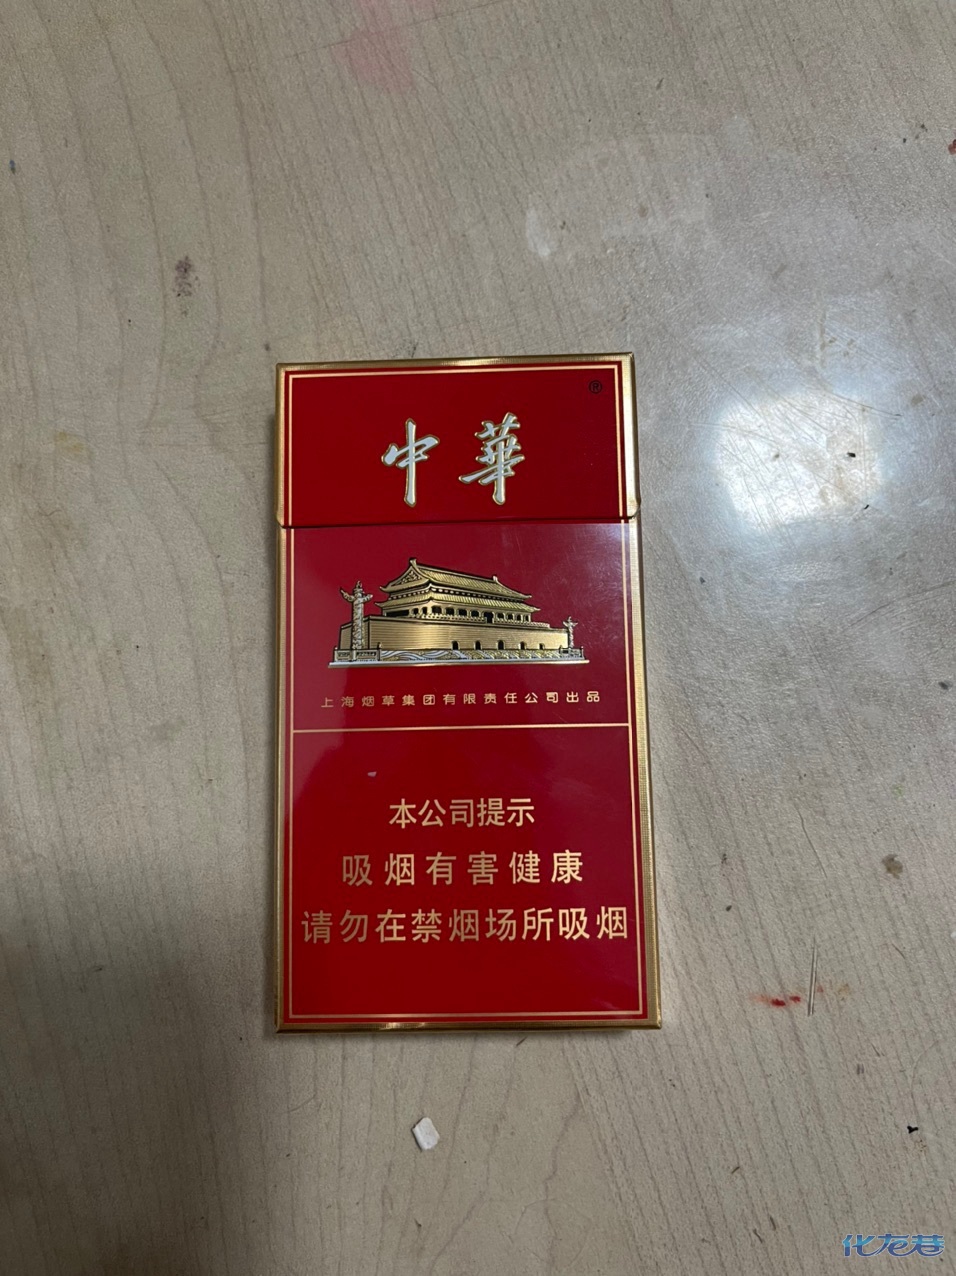 5000中华烟图片